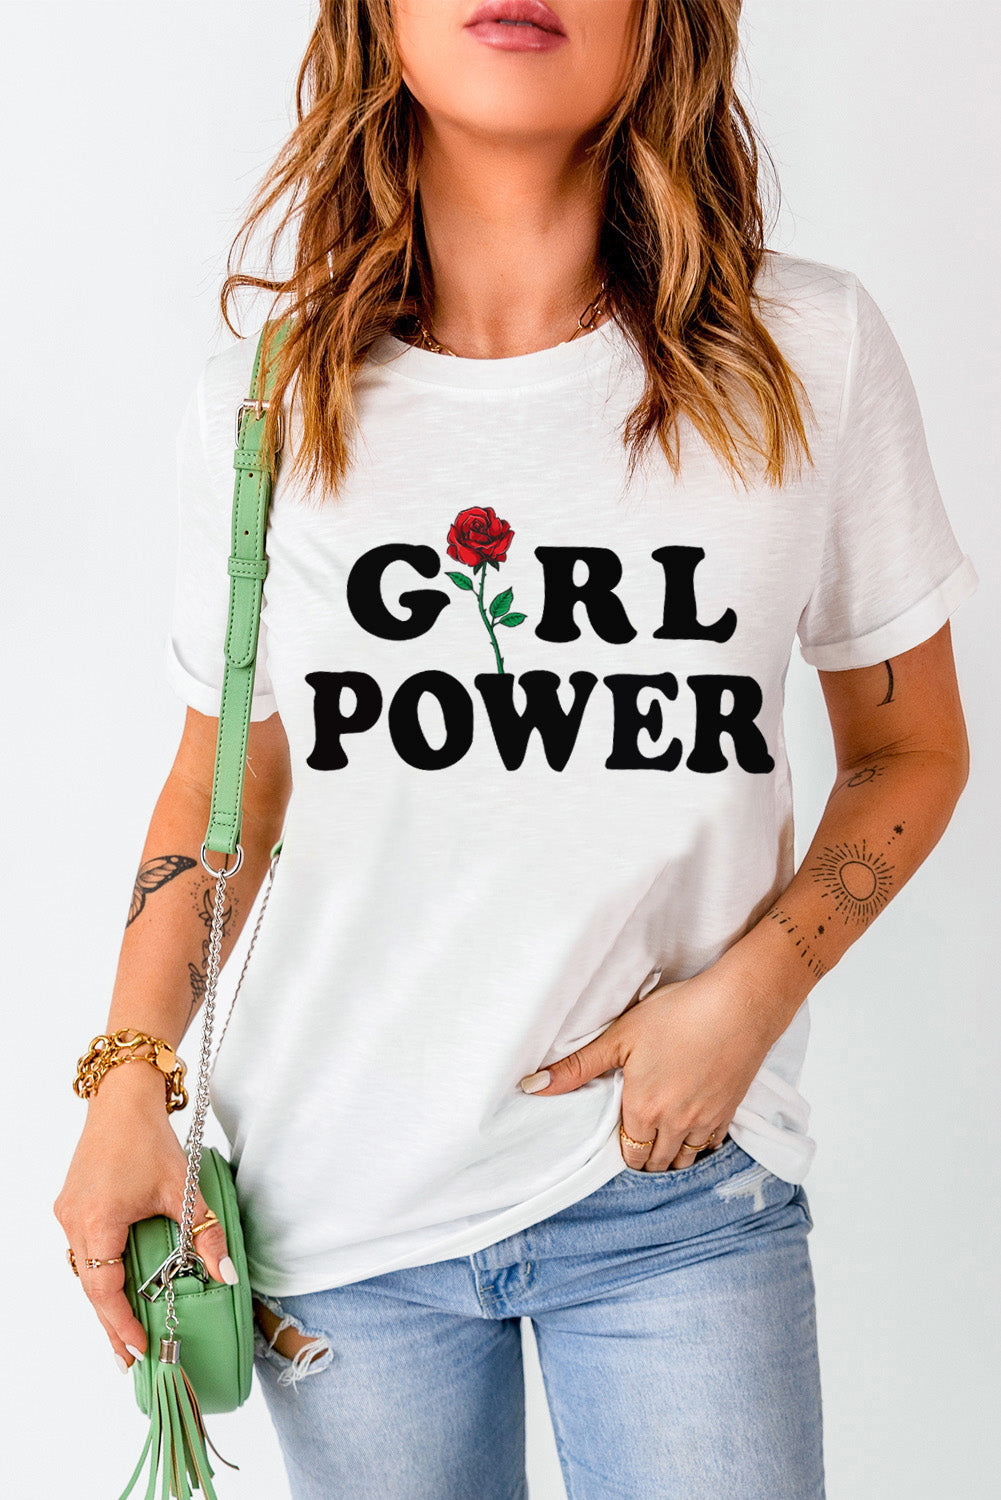 GIRL POWER Rose Graphic Tee Shirt